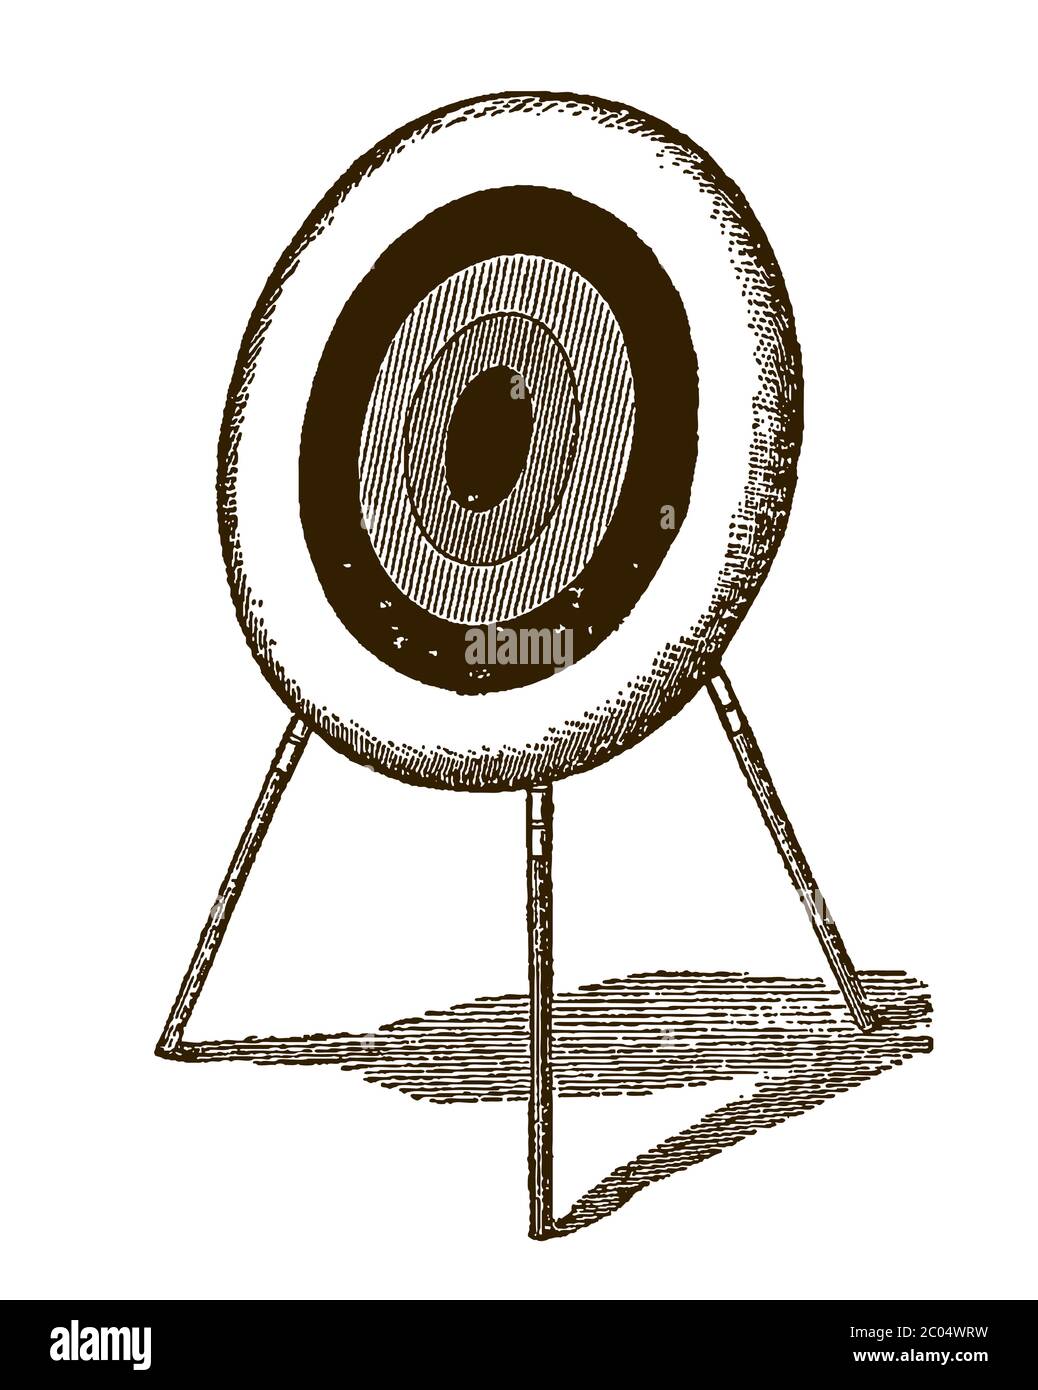 Bogenschießen Ziel auf einem dreibeinigen Stand in drei Viertel Vorderansicht. Illustration nach einem antiken Stich aus dem 19. Jahrhundert Stock Vektor